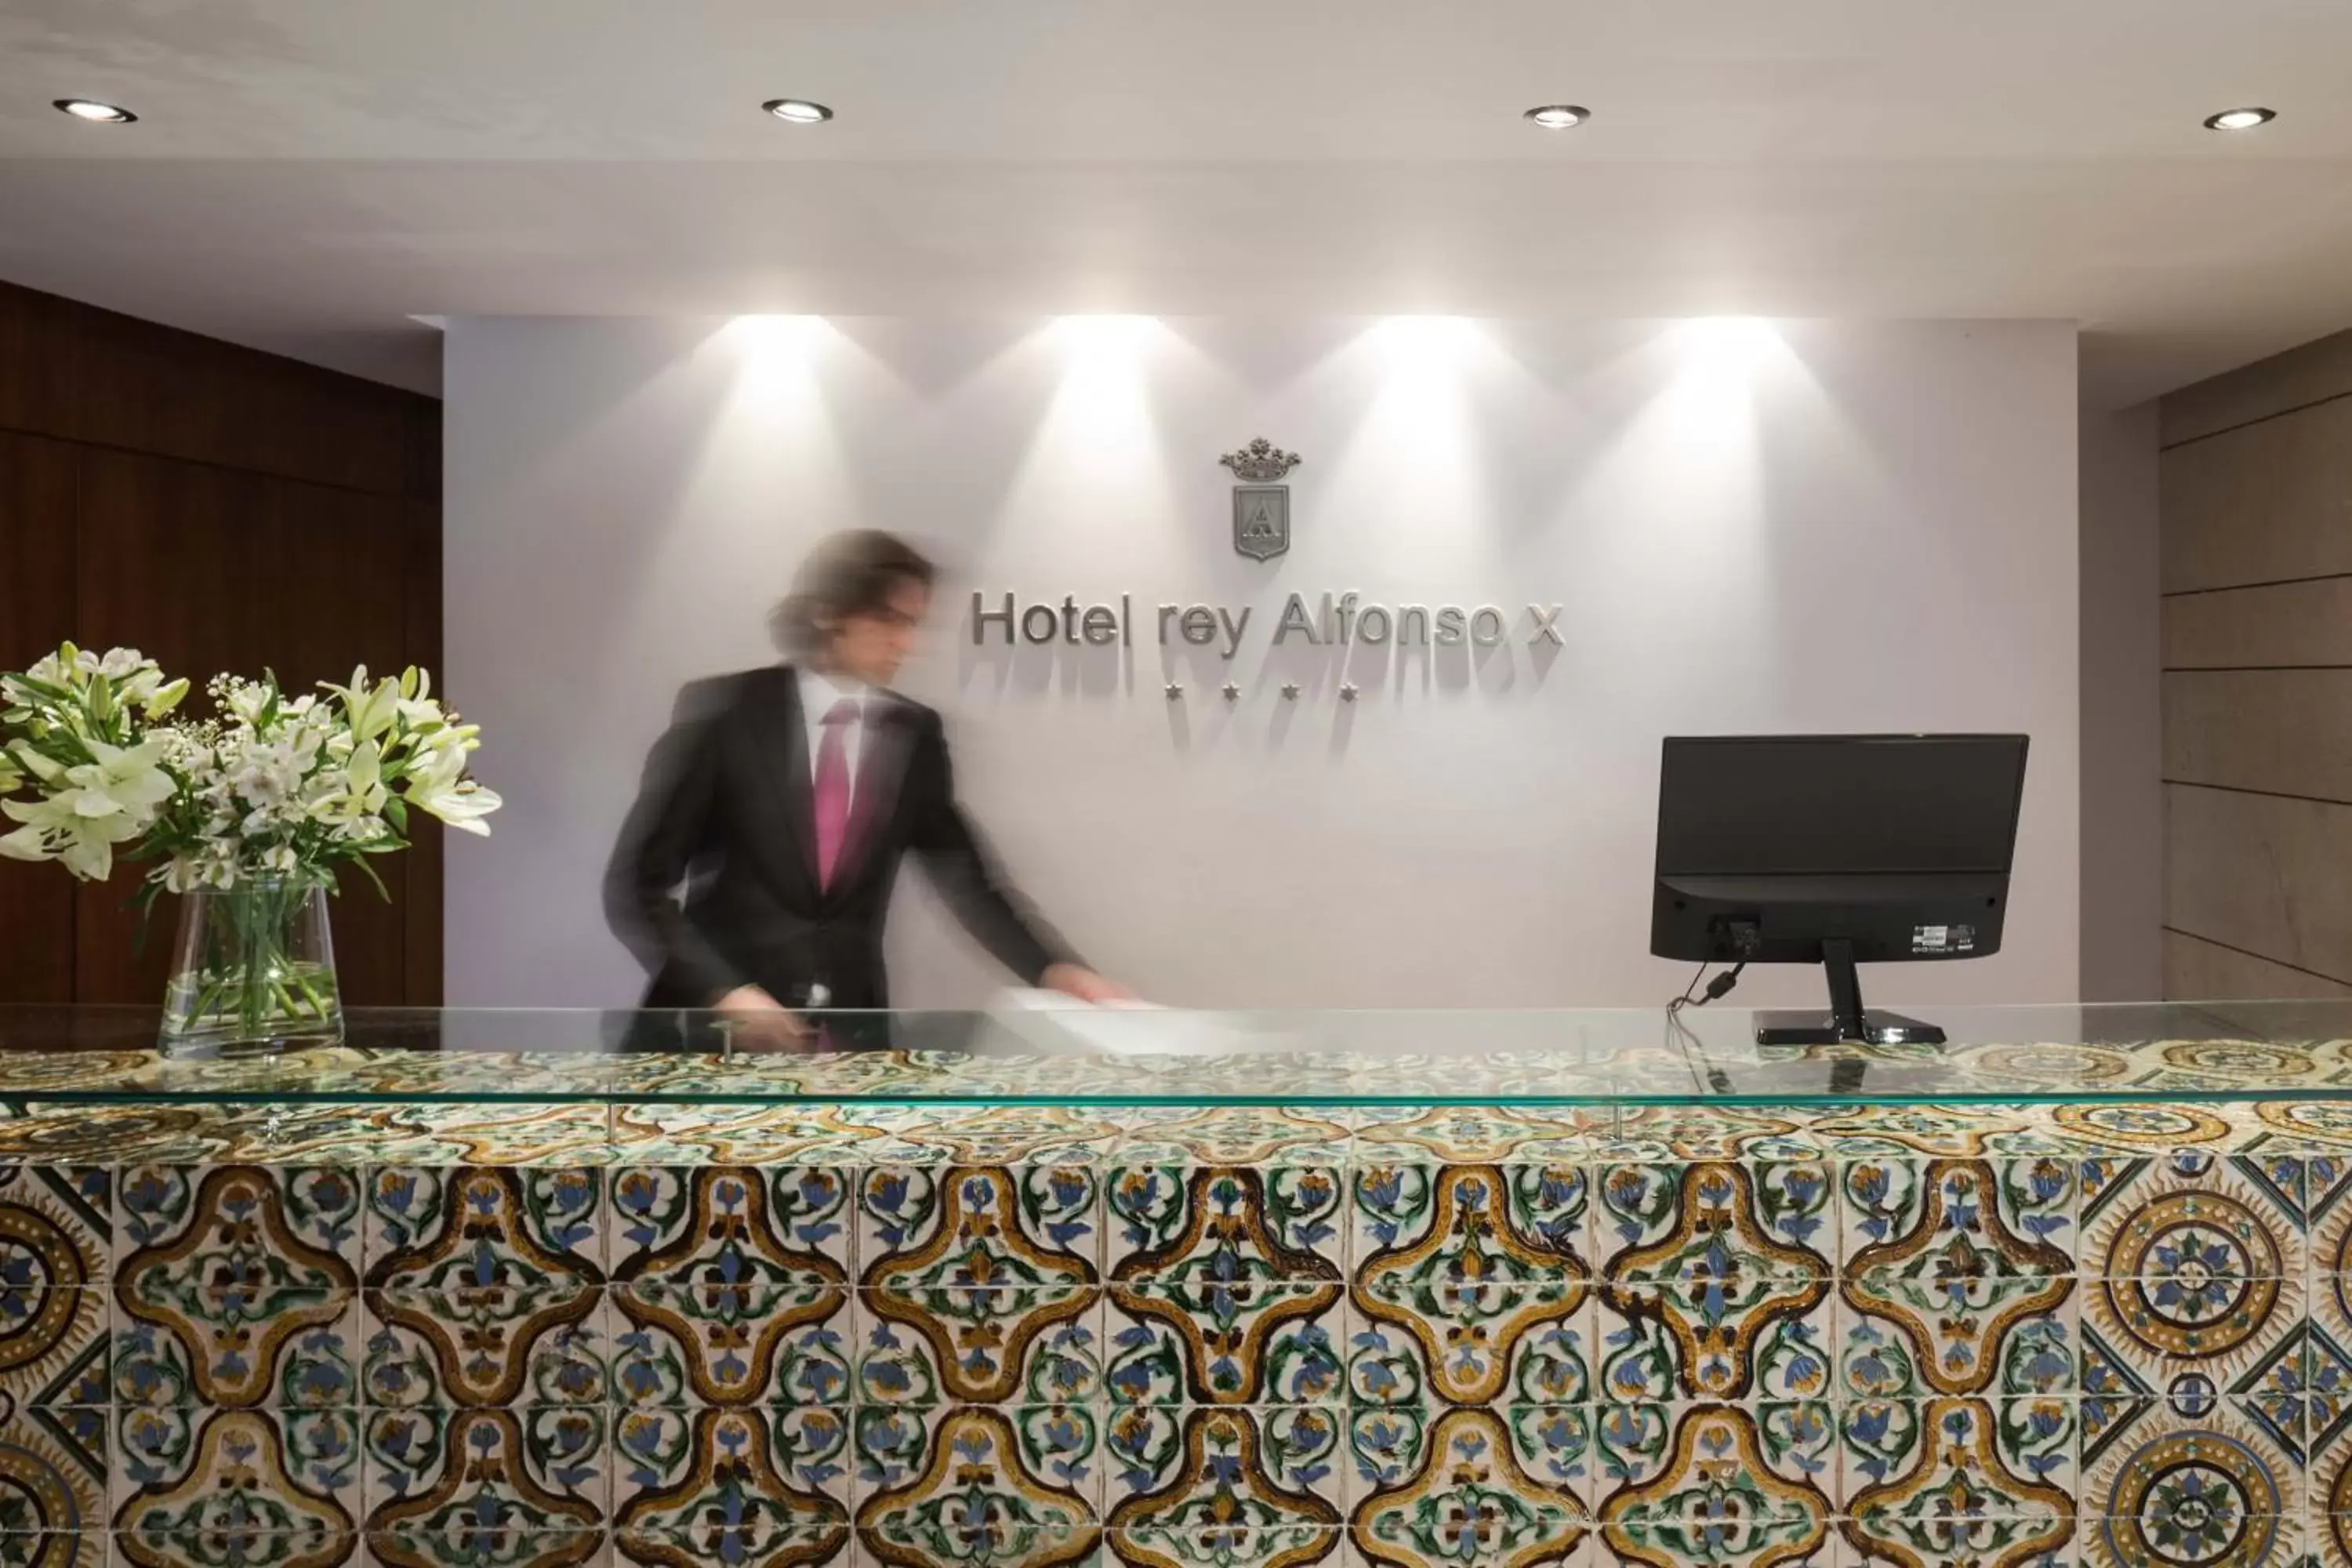 Lobby or reception, Lobby/Reception in Hotel Rey Alfonso X